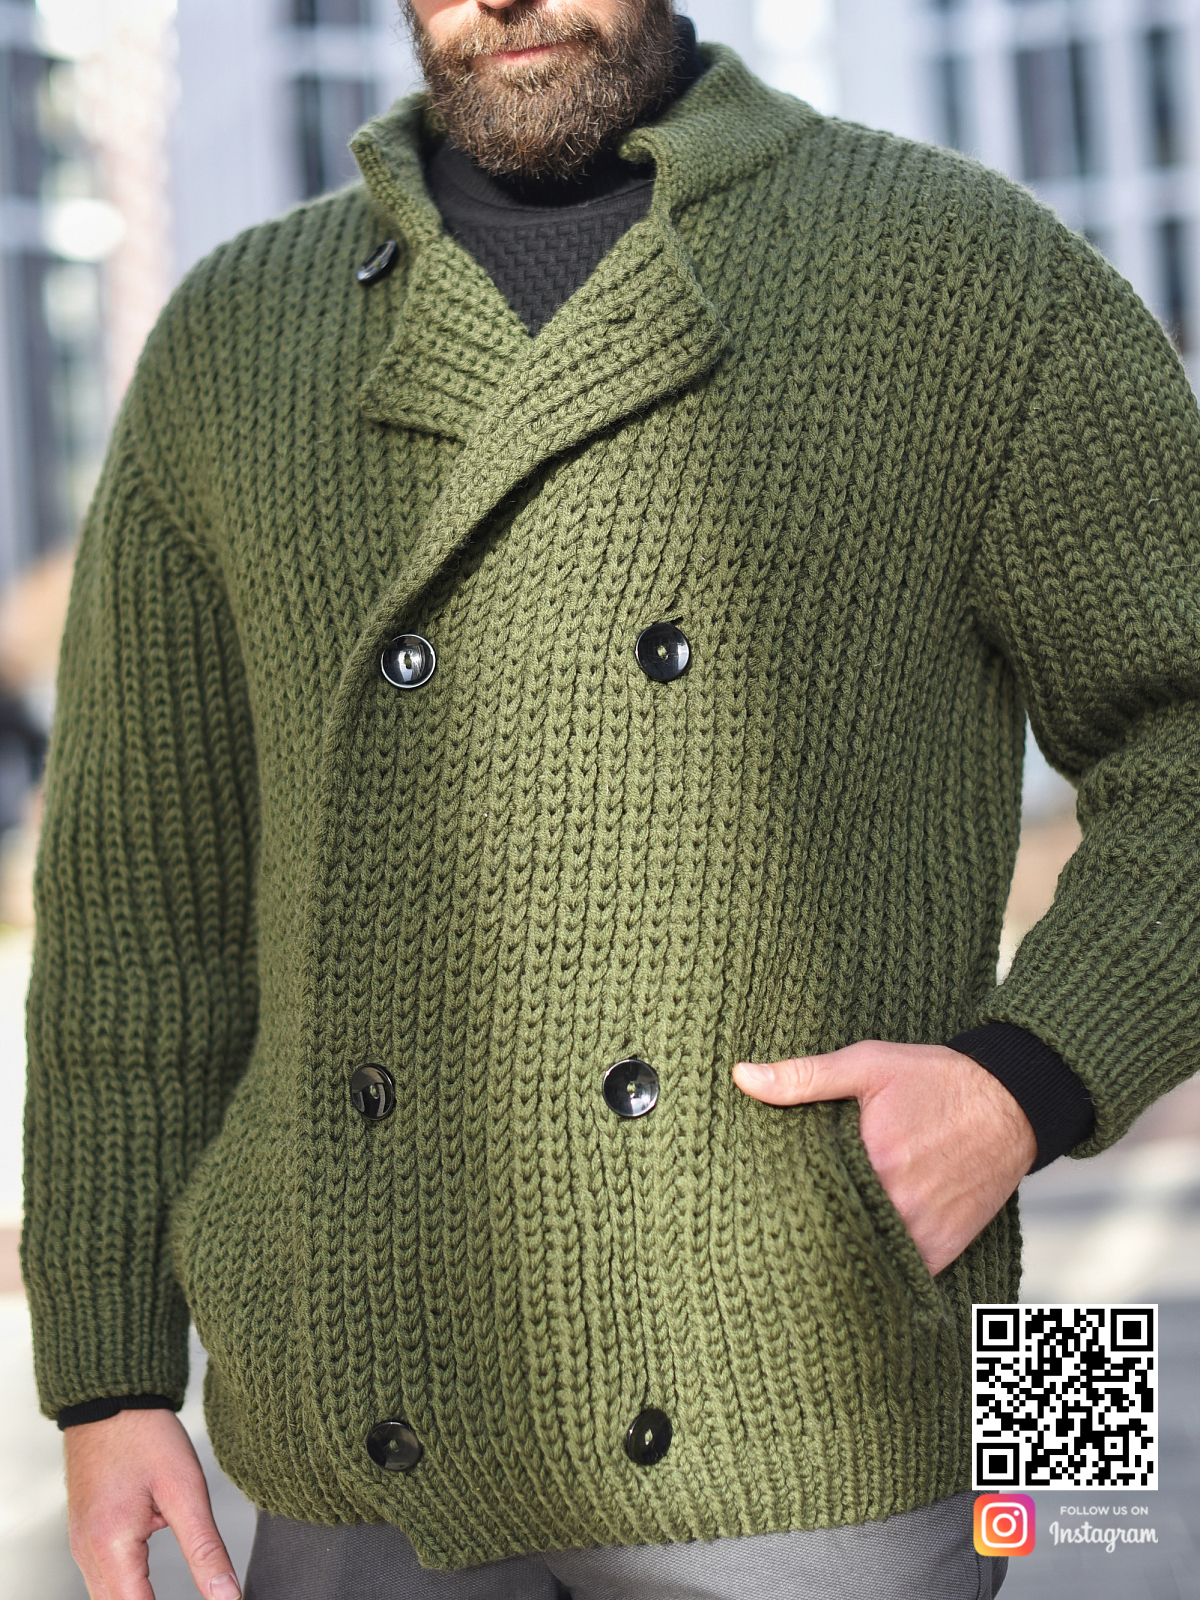 На пятой фотографии зимний вязаный мужской кардиган на пуговицах из шерсти в интернет-магазине одежды ручной работы Shapar.